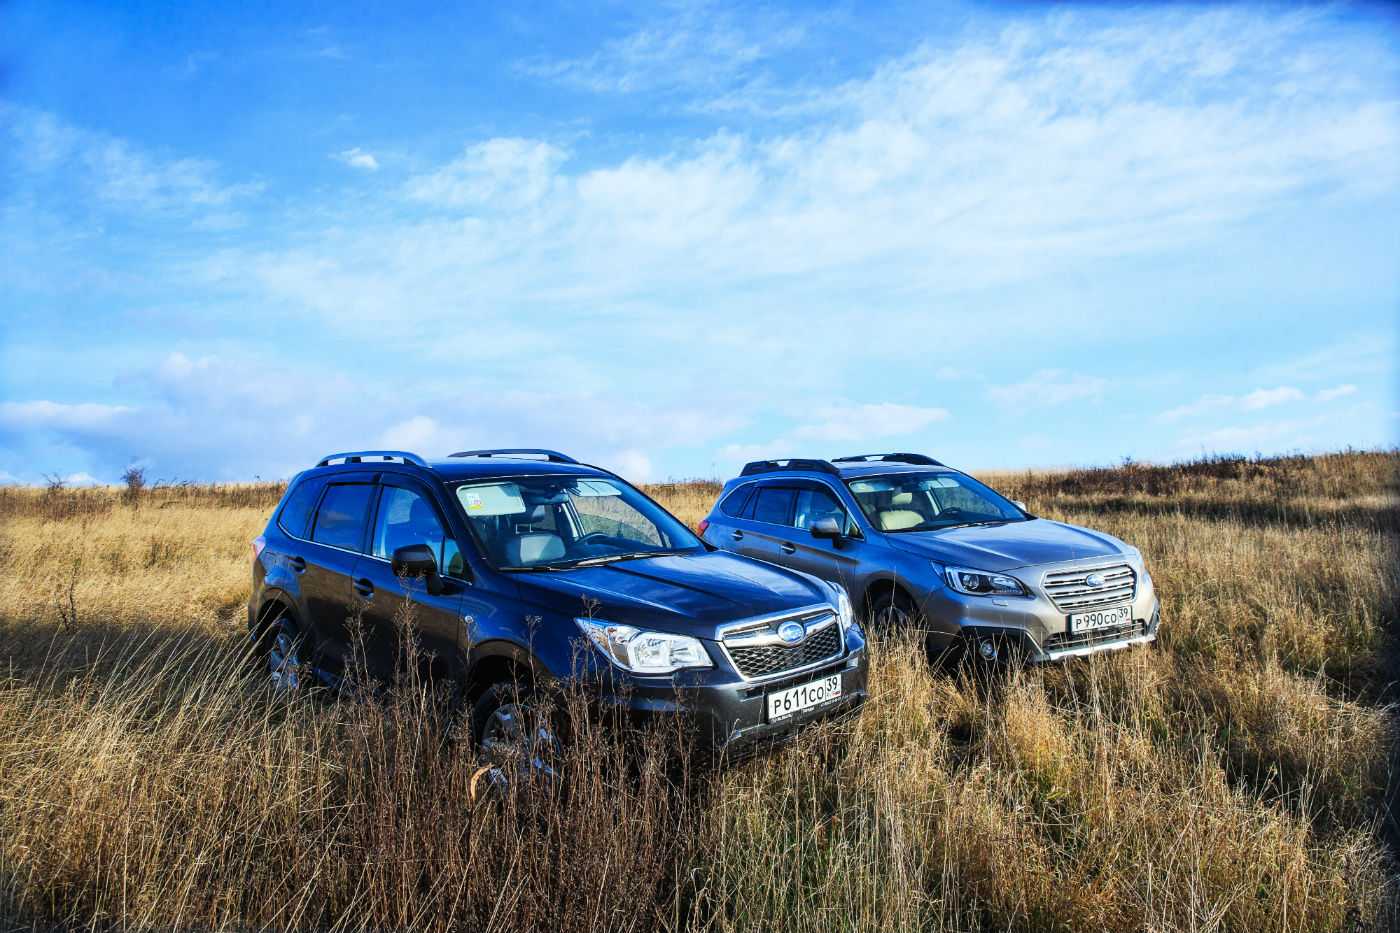 За 11 месяцев 2017 года компания Subaru продала на российском рынке автомобилей на общую сумму в 104 млрд рублей самыми популярными моделями стали Forester и Outback